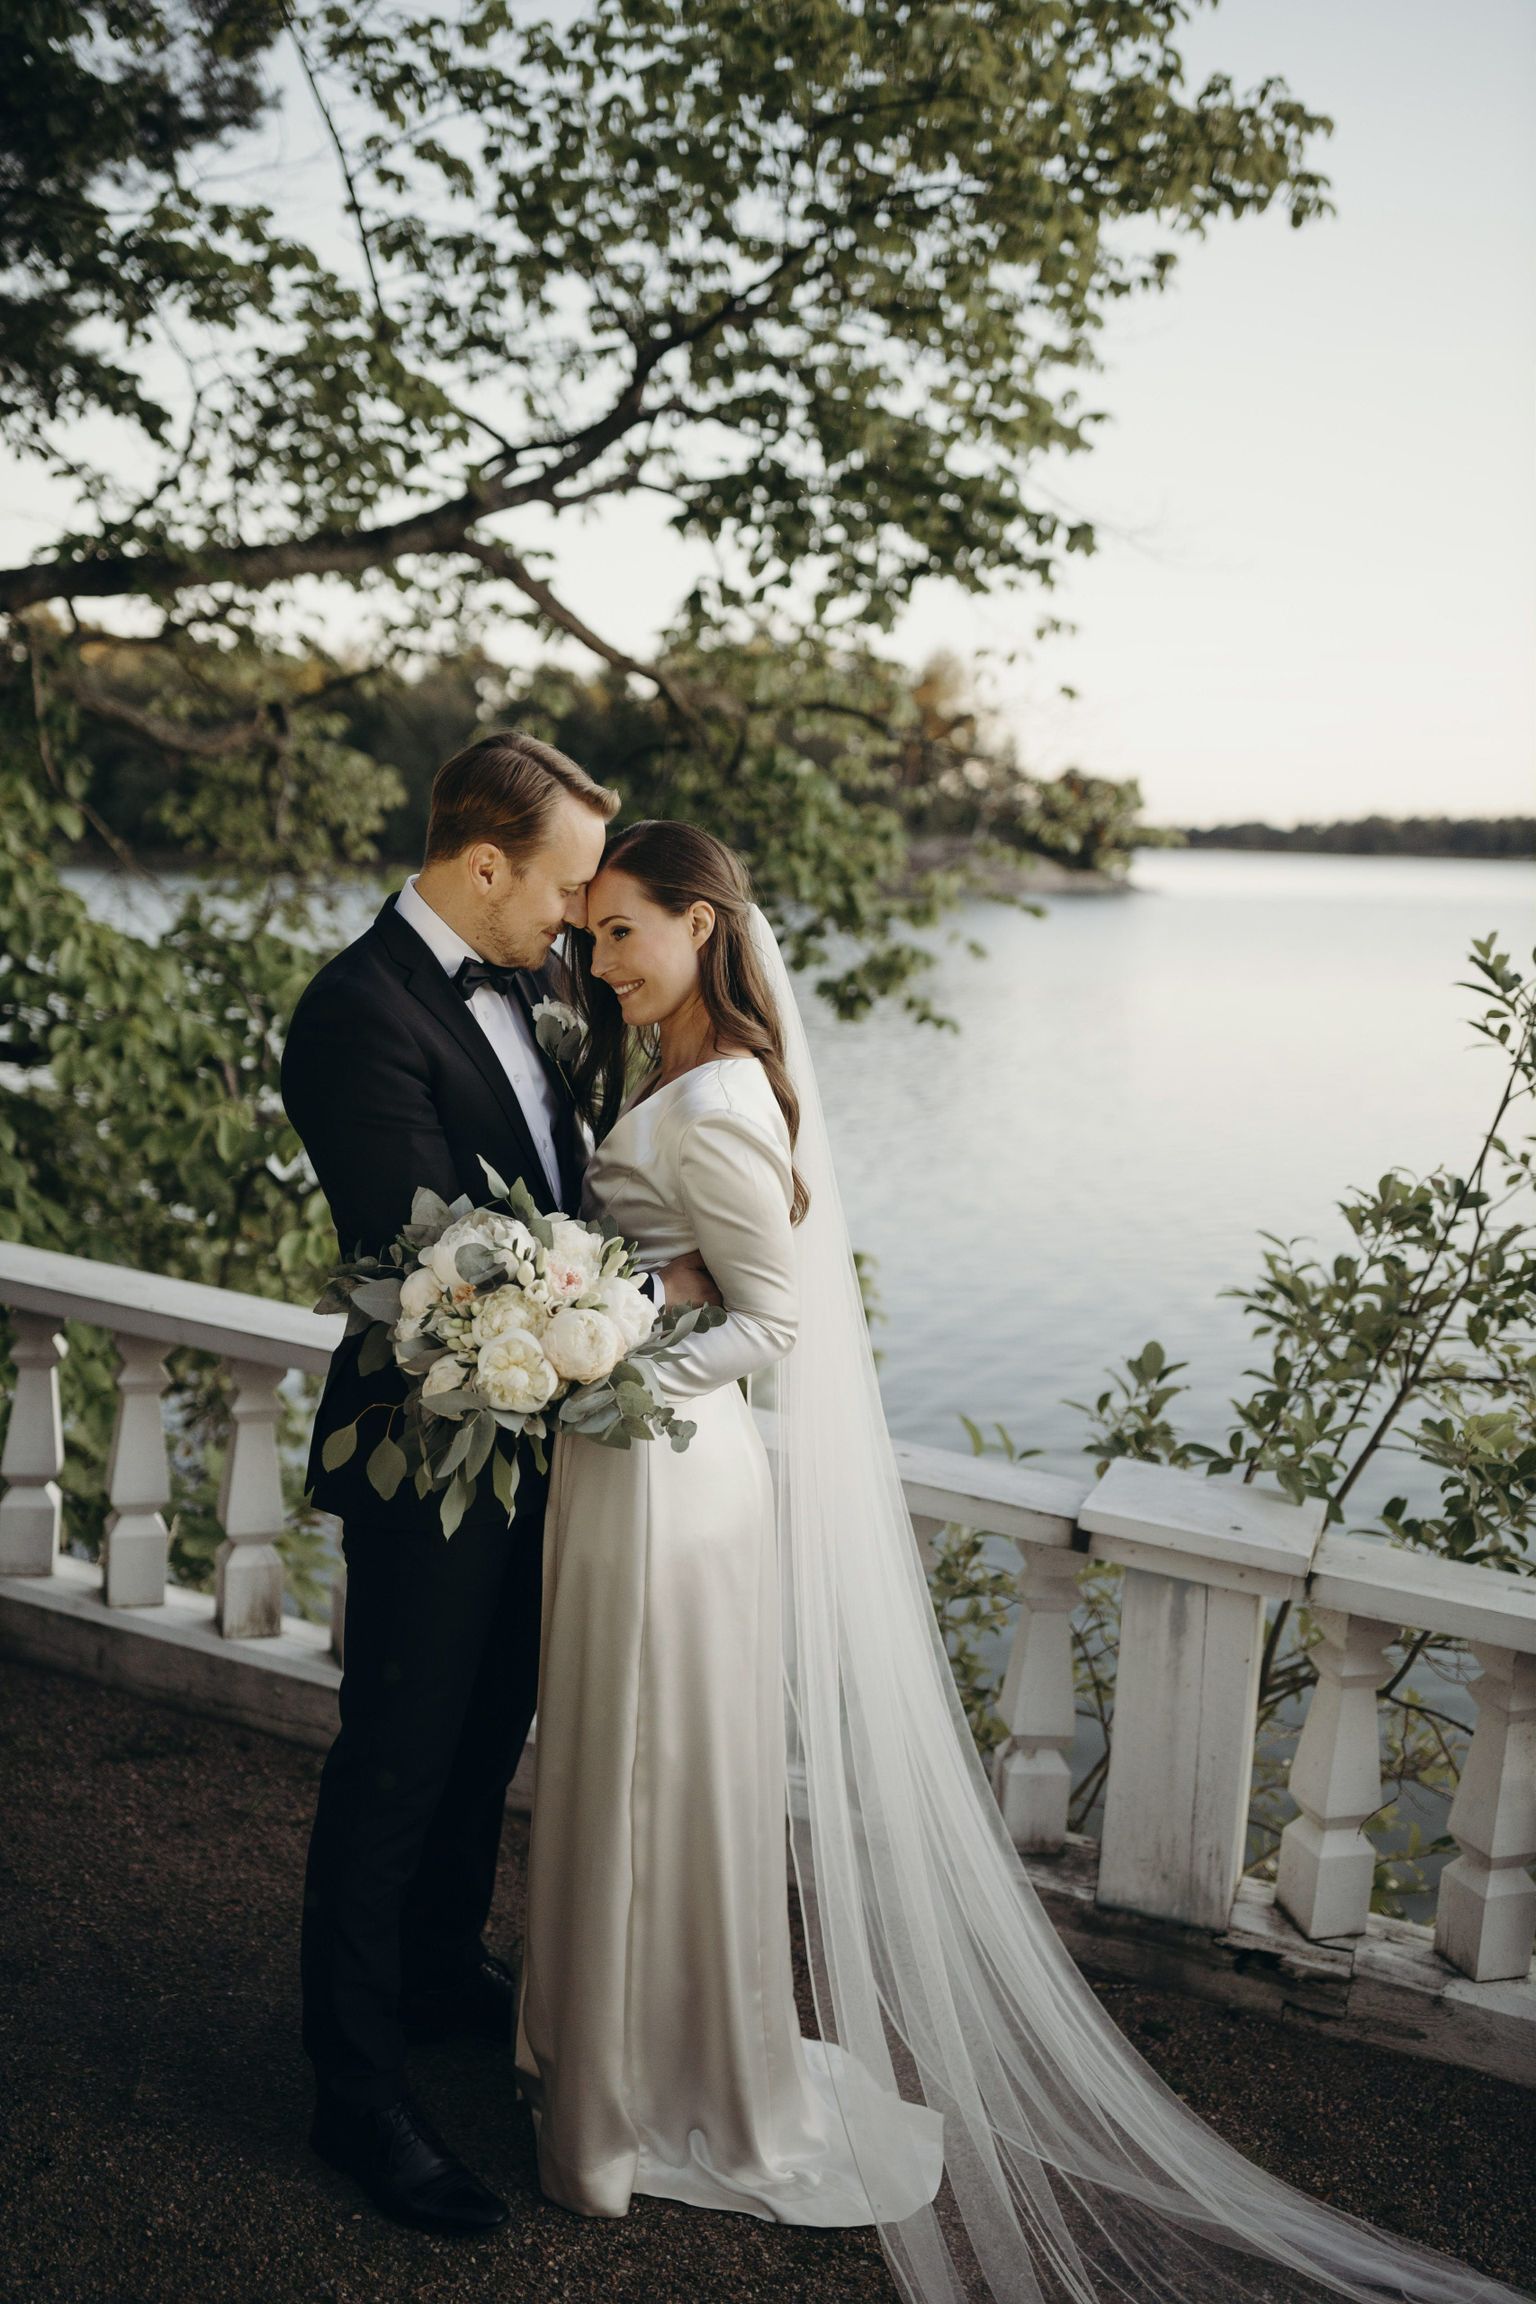 Soome peaminister Sanna Marin ja ta kauaaegne elukaaslane Markus Räikkönen abiellusid 1. augustil 2020